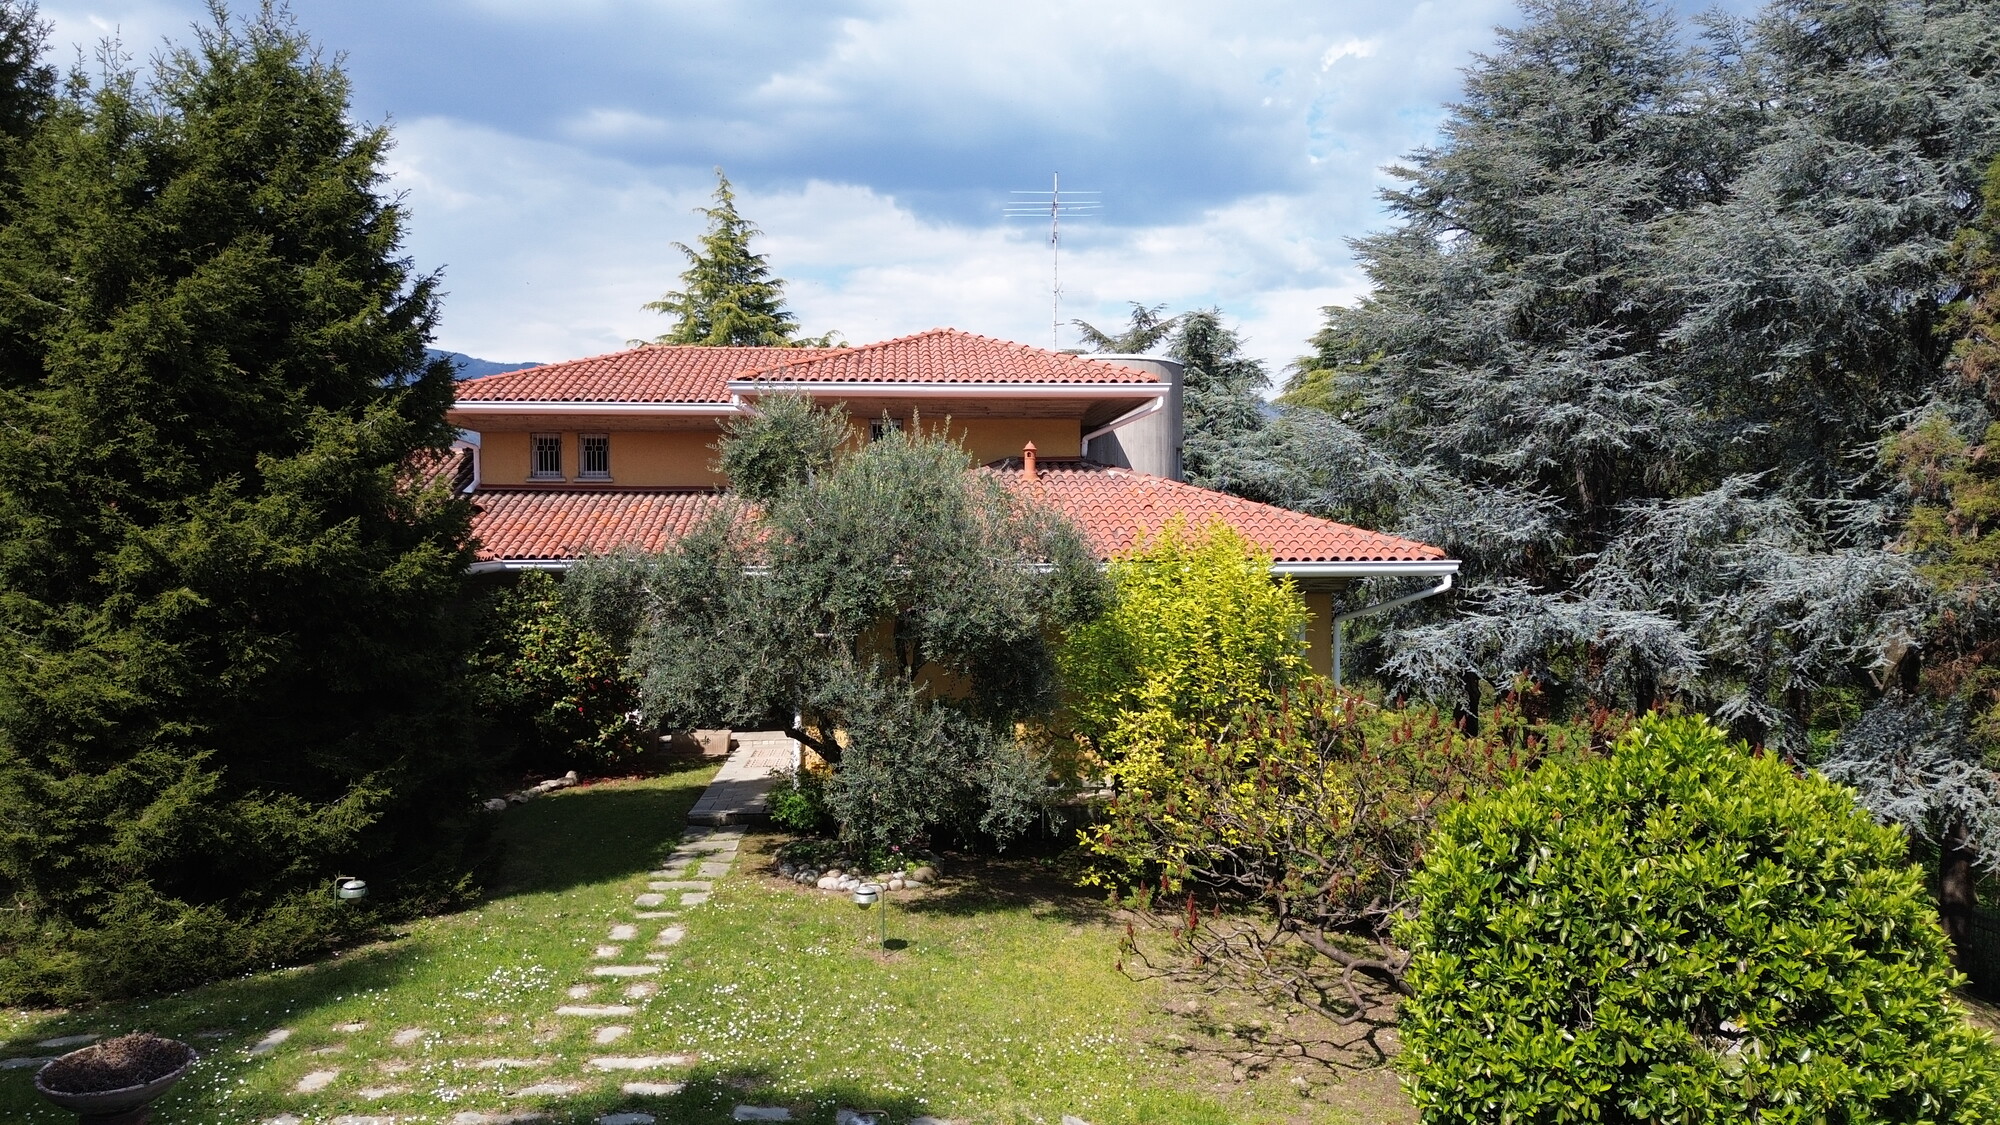 Villa singola con parco e piscina in vendita a Monguzzo | luxforsale.it